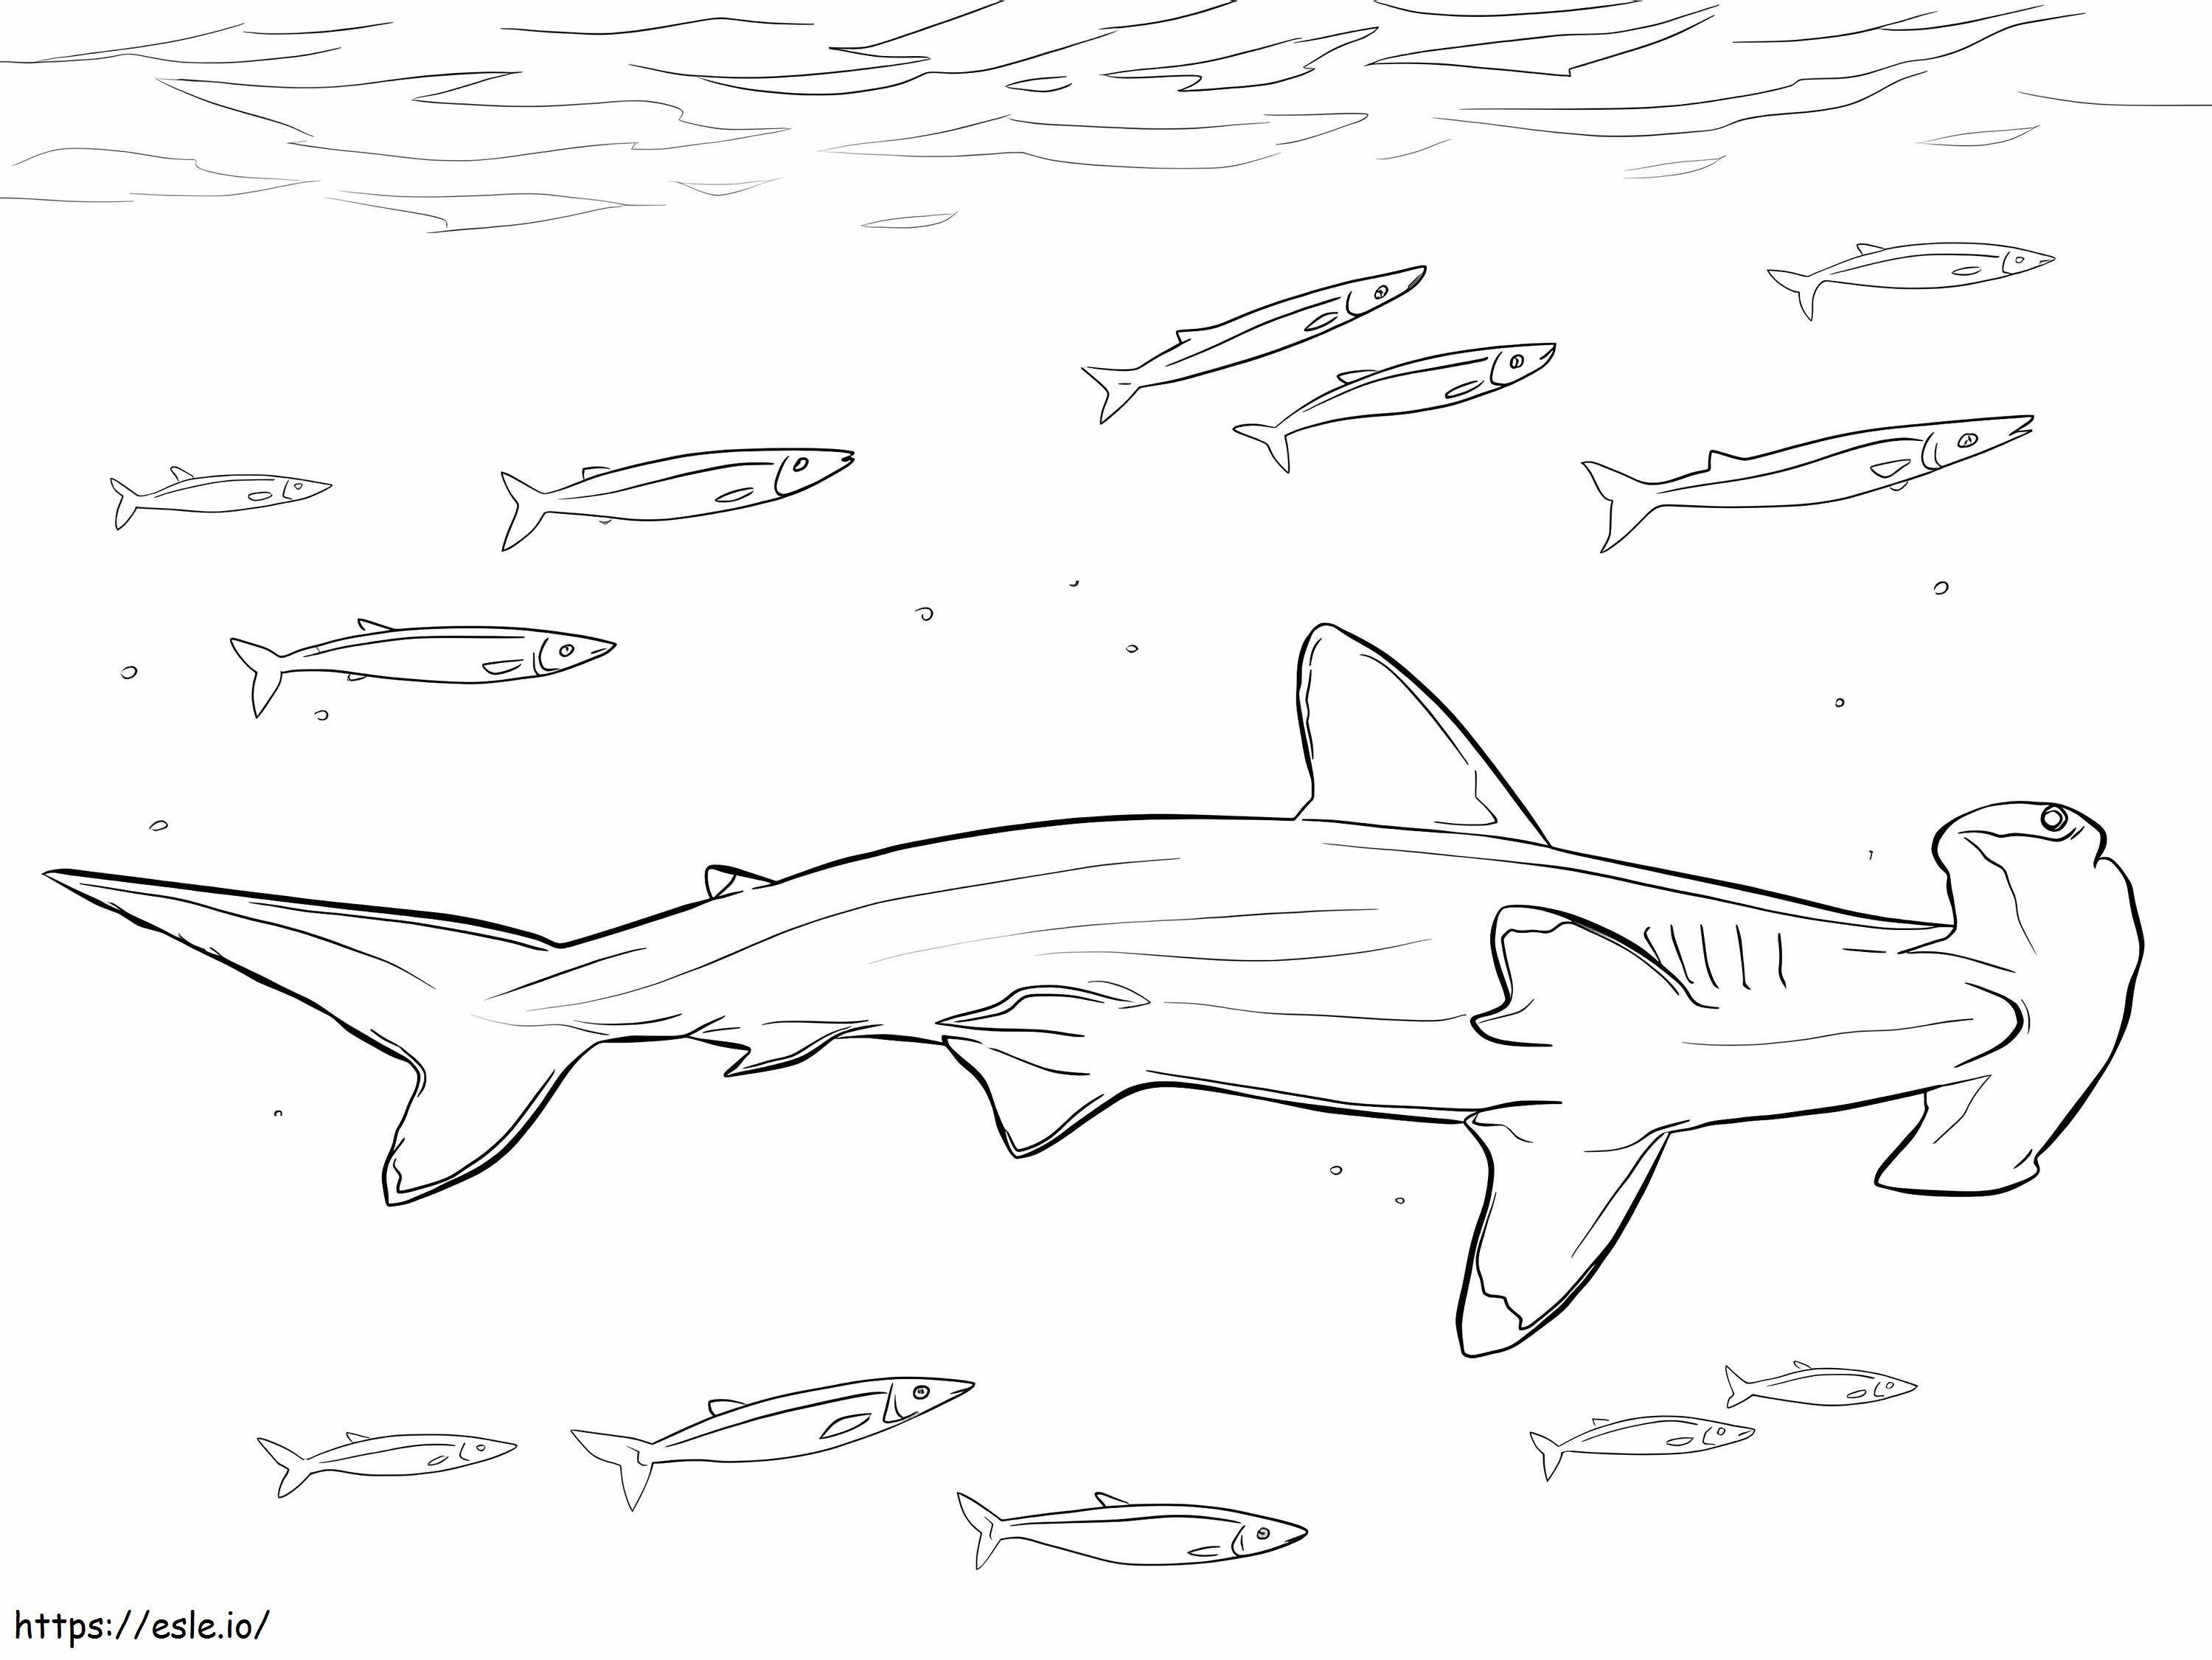 Çekiçbaş Köpekbalığı ve Balıklar boyama